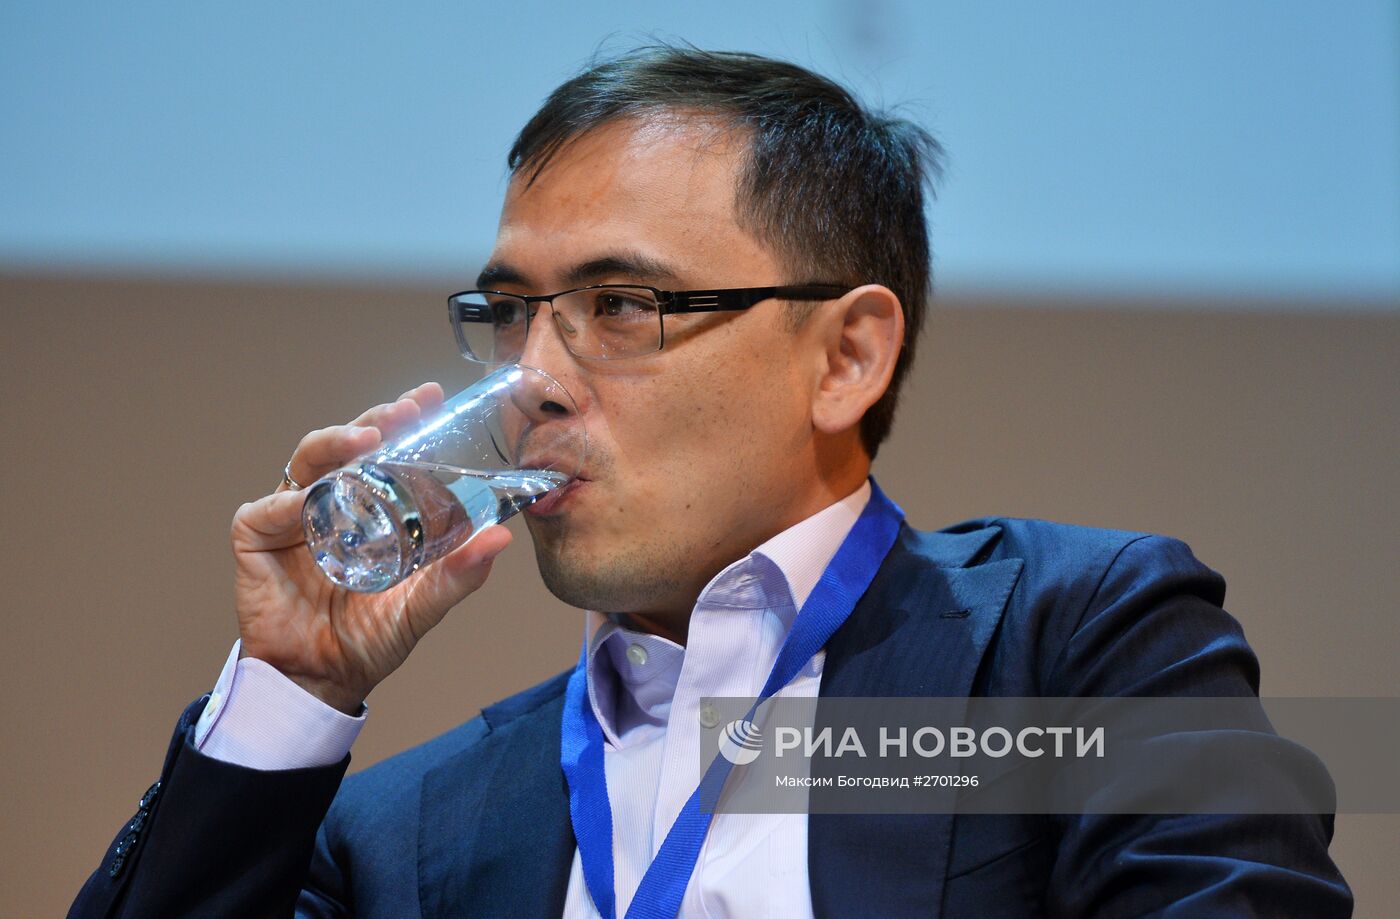 Первый казанский форум инновационных финансовых технологий FINNOPOLIS 2015